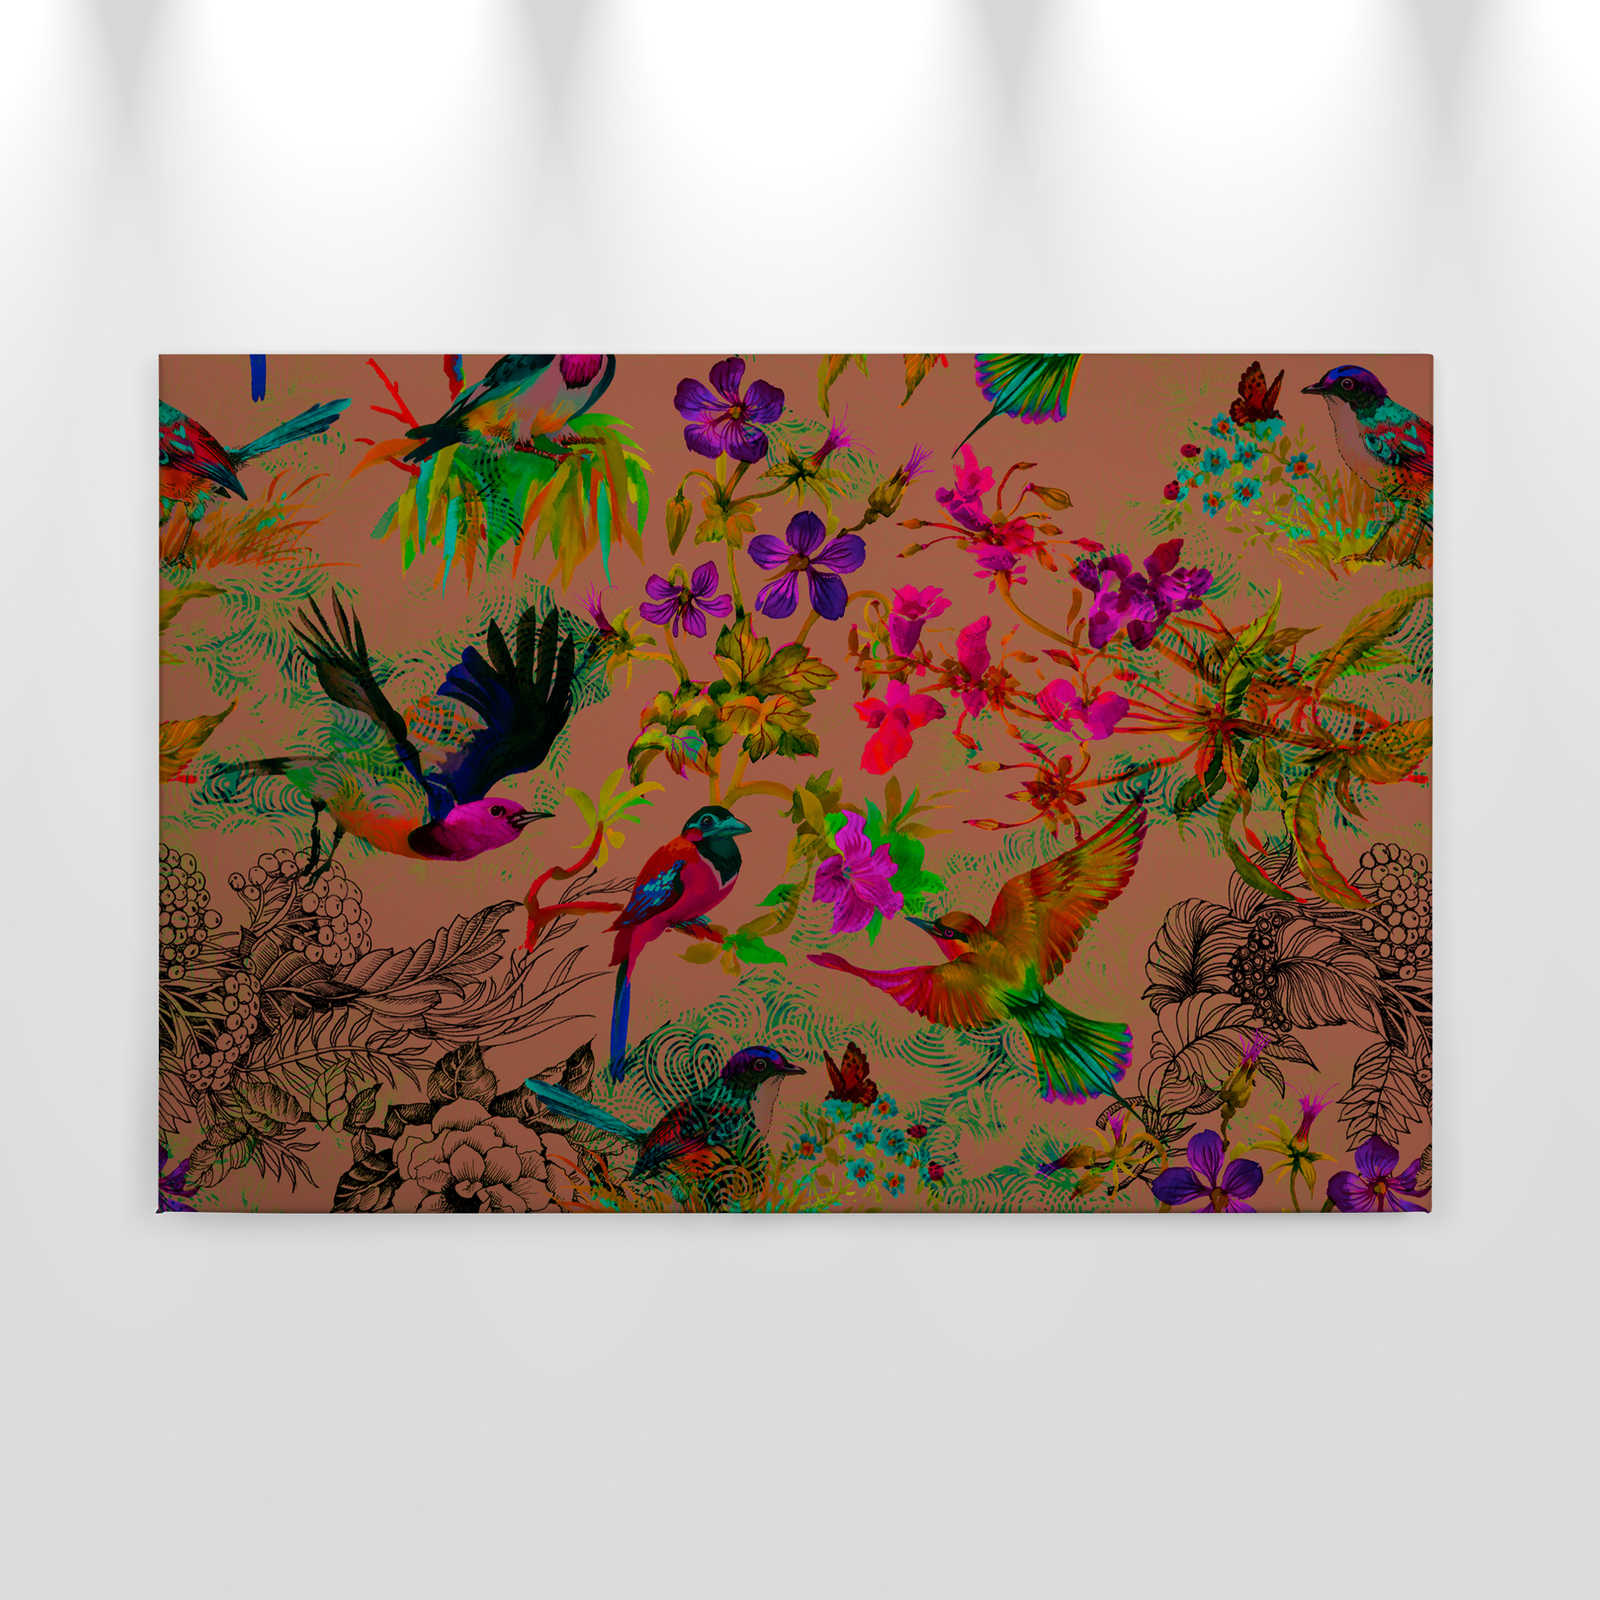             Vogel Leinwandbild im bunten Collage Stil – 0,90 m x 0,60 m
        